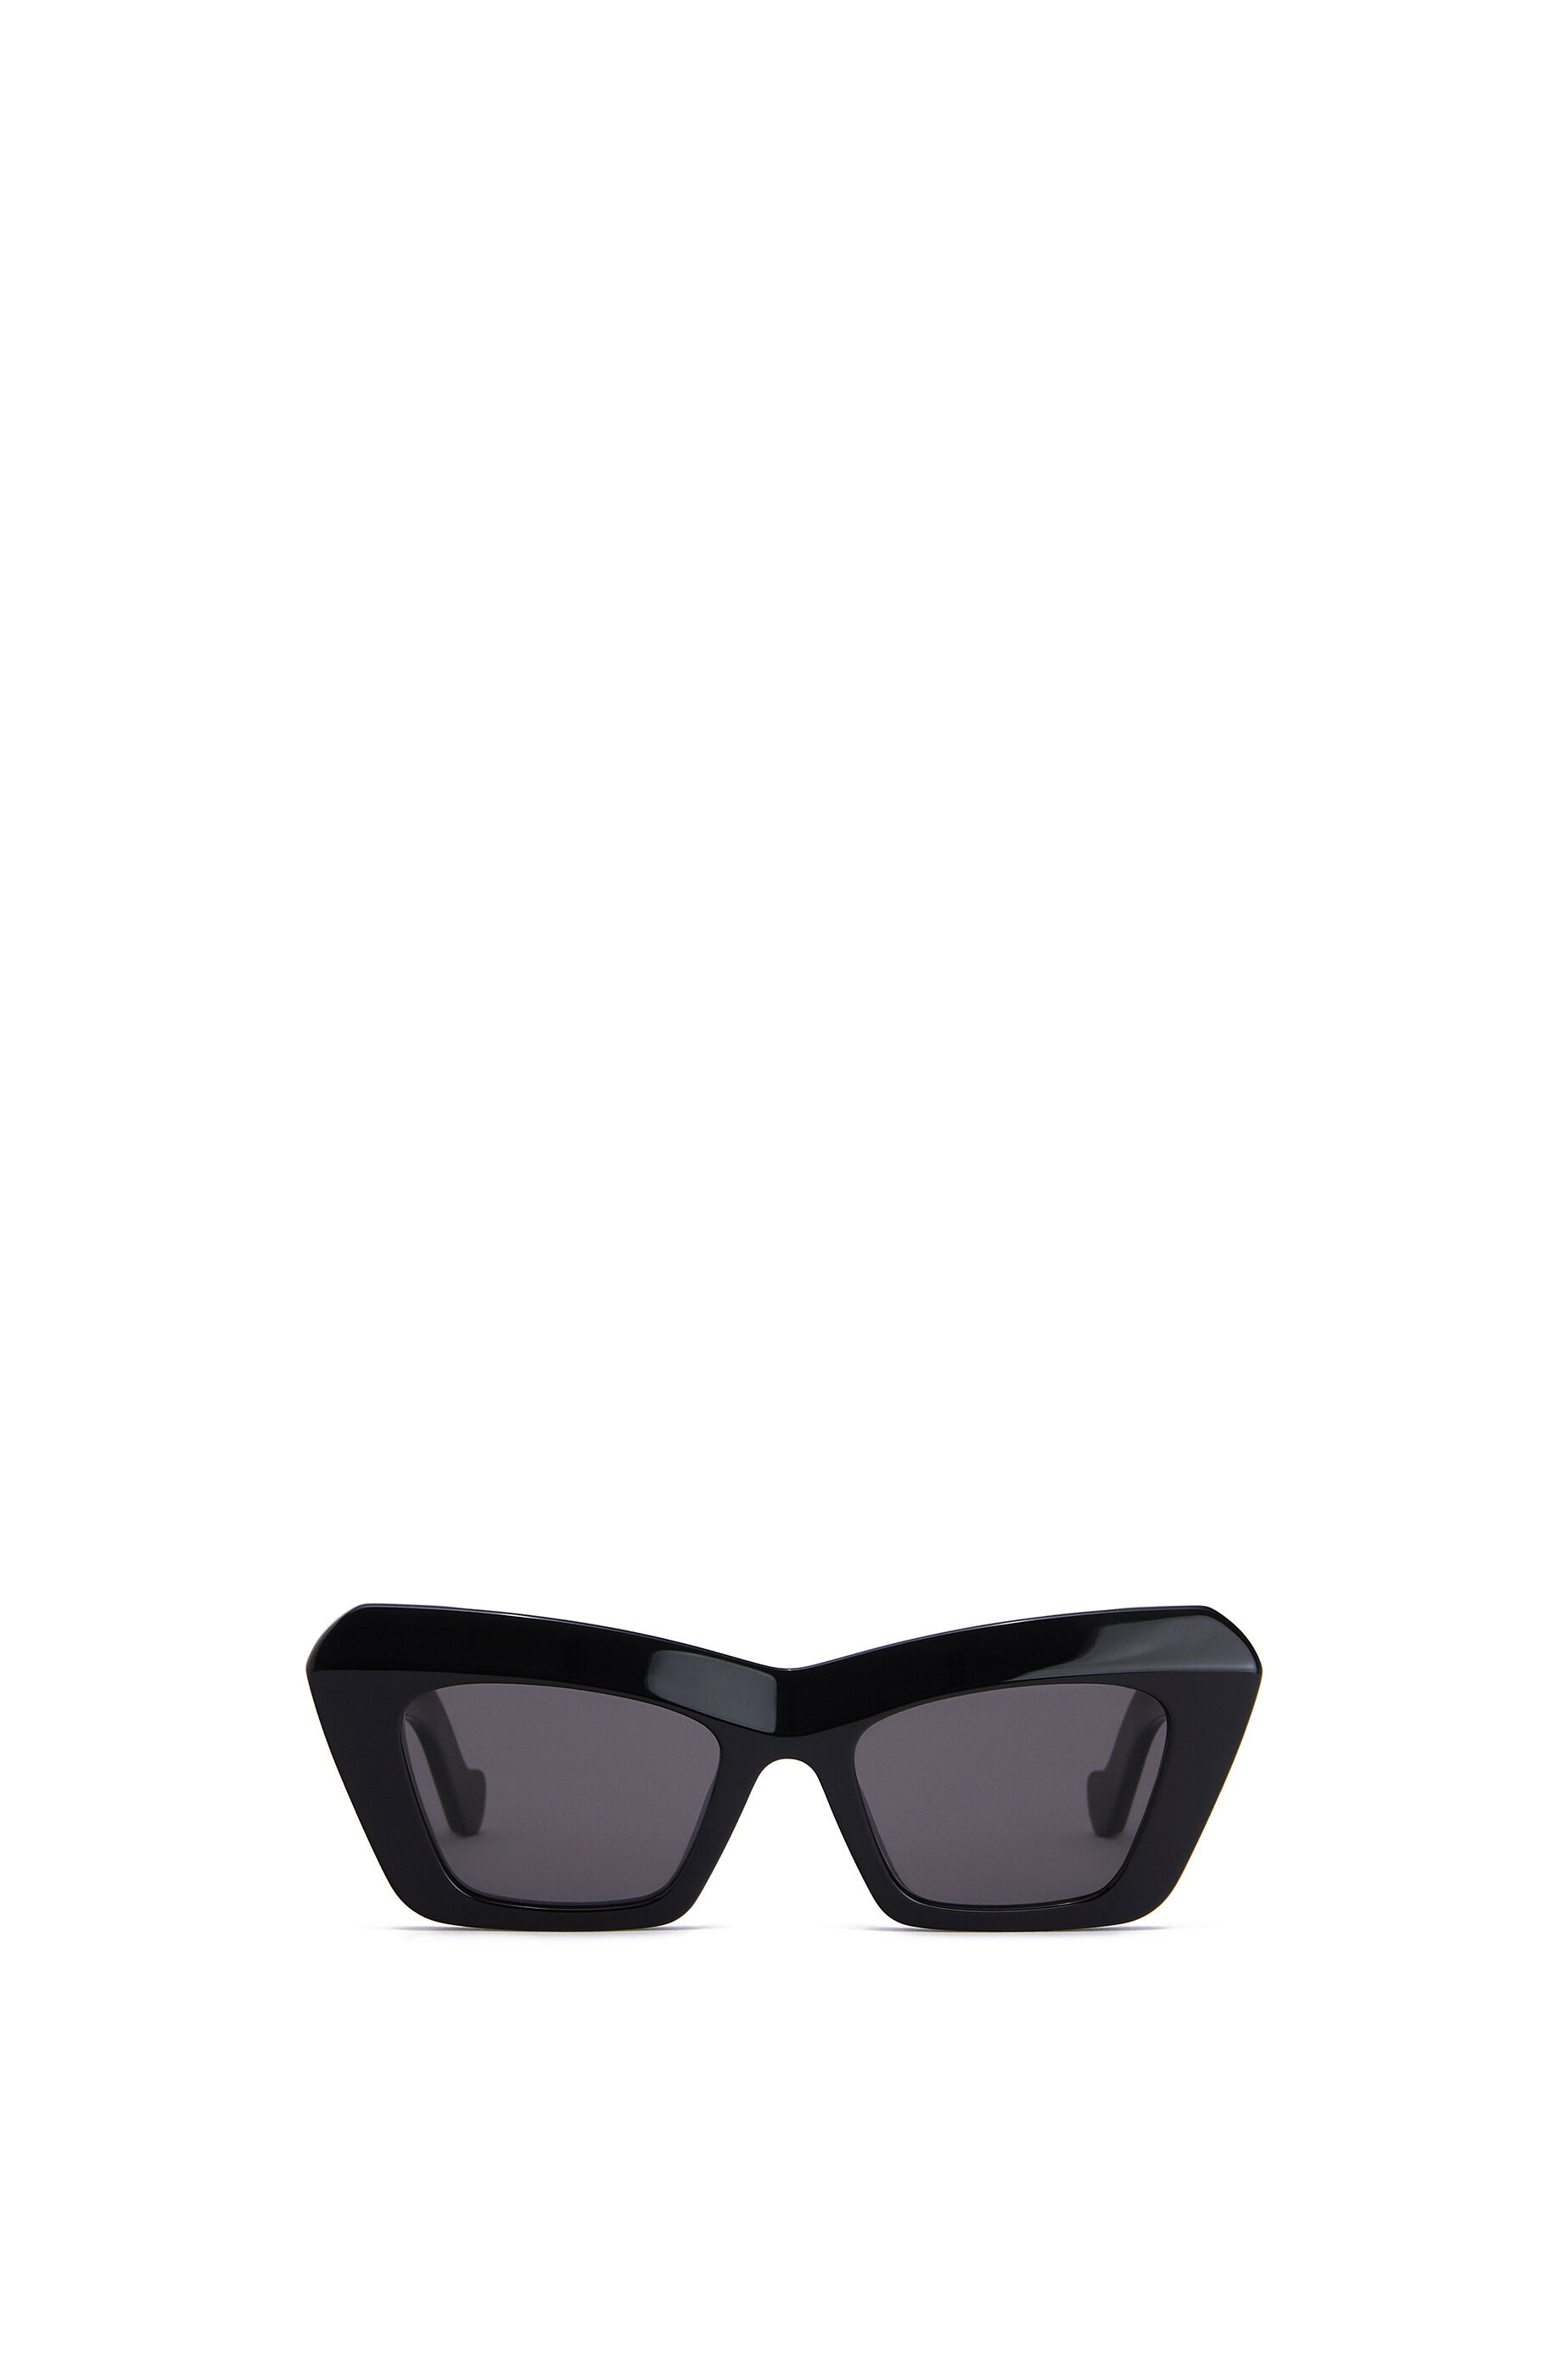 Cateye sunglasses in acetate - 1